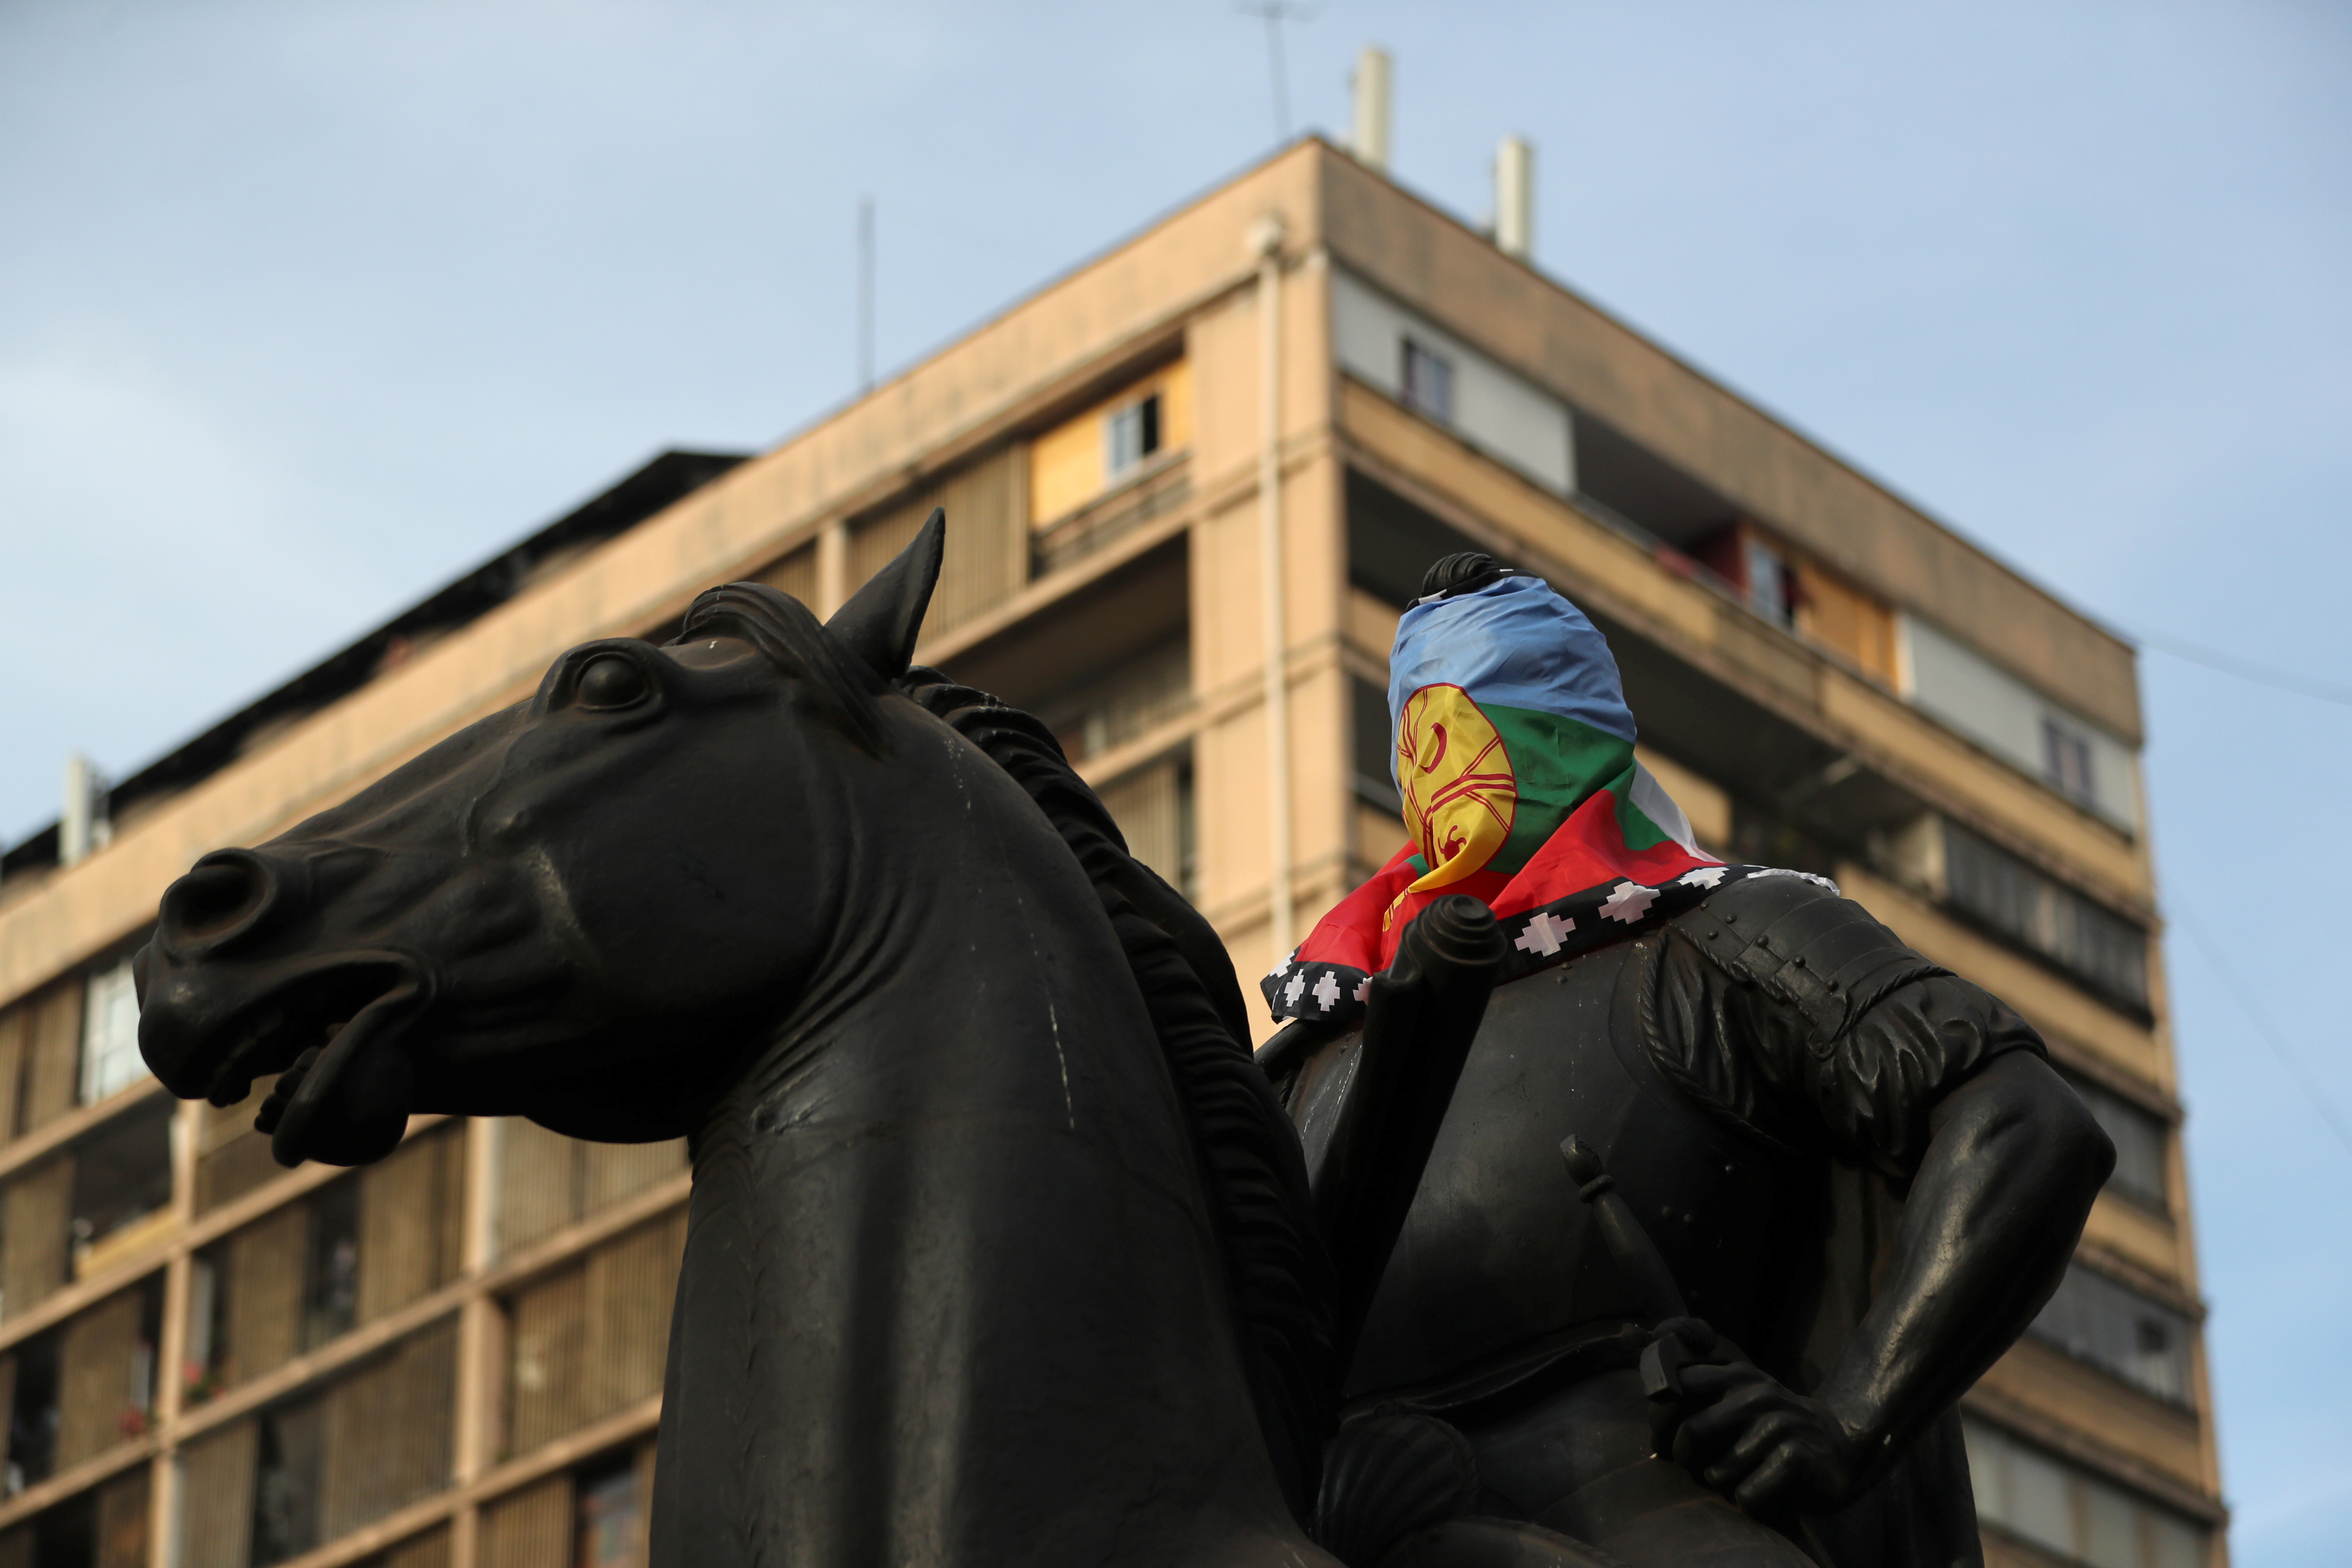 La cabeza de la estatua del conquistador español Pedro de Valdivia está cubierta con una bandera mapuche en Santiago, Chile (REUTERS/Ivan Alvarado)